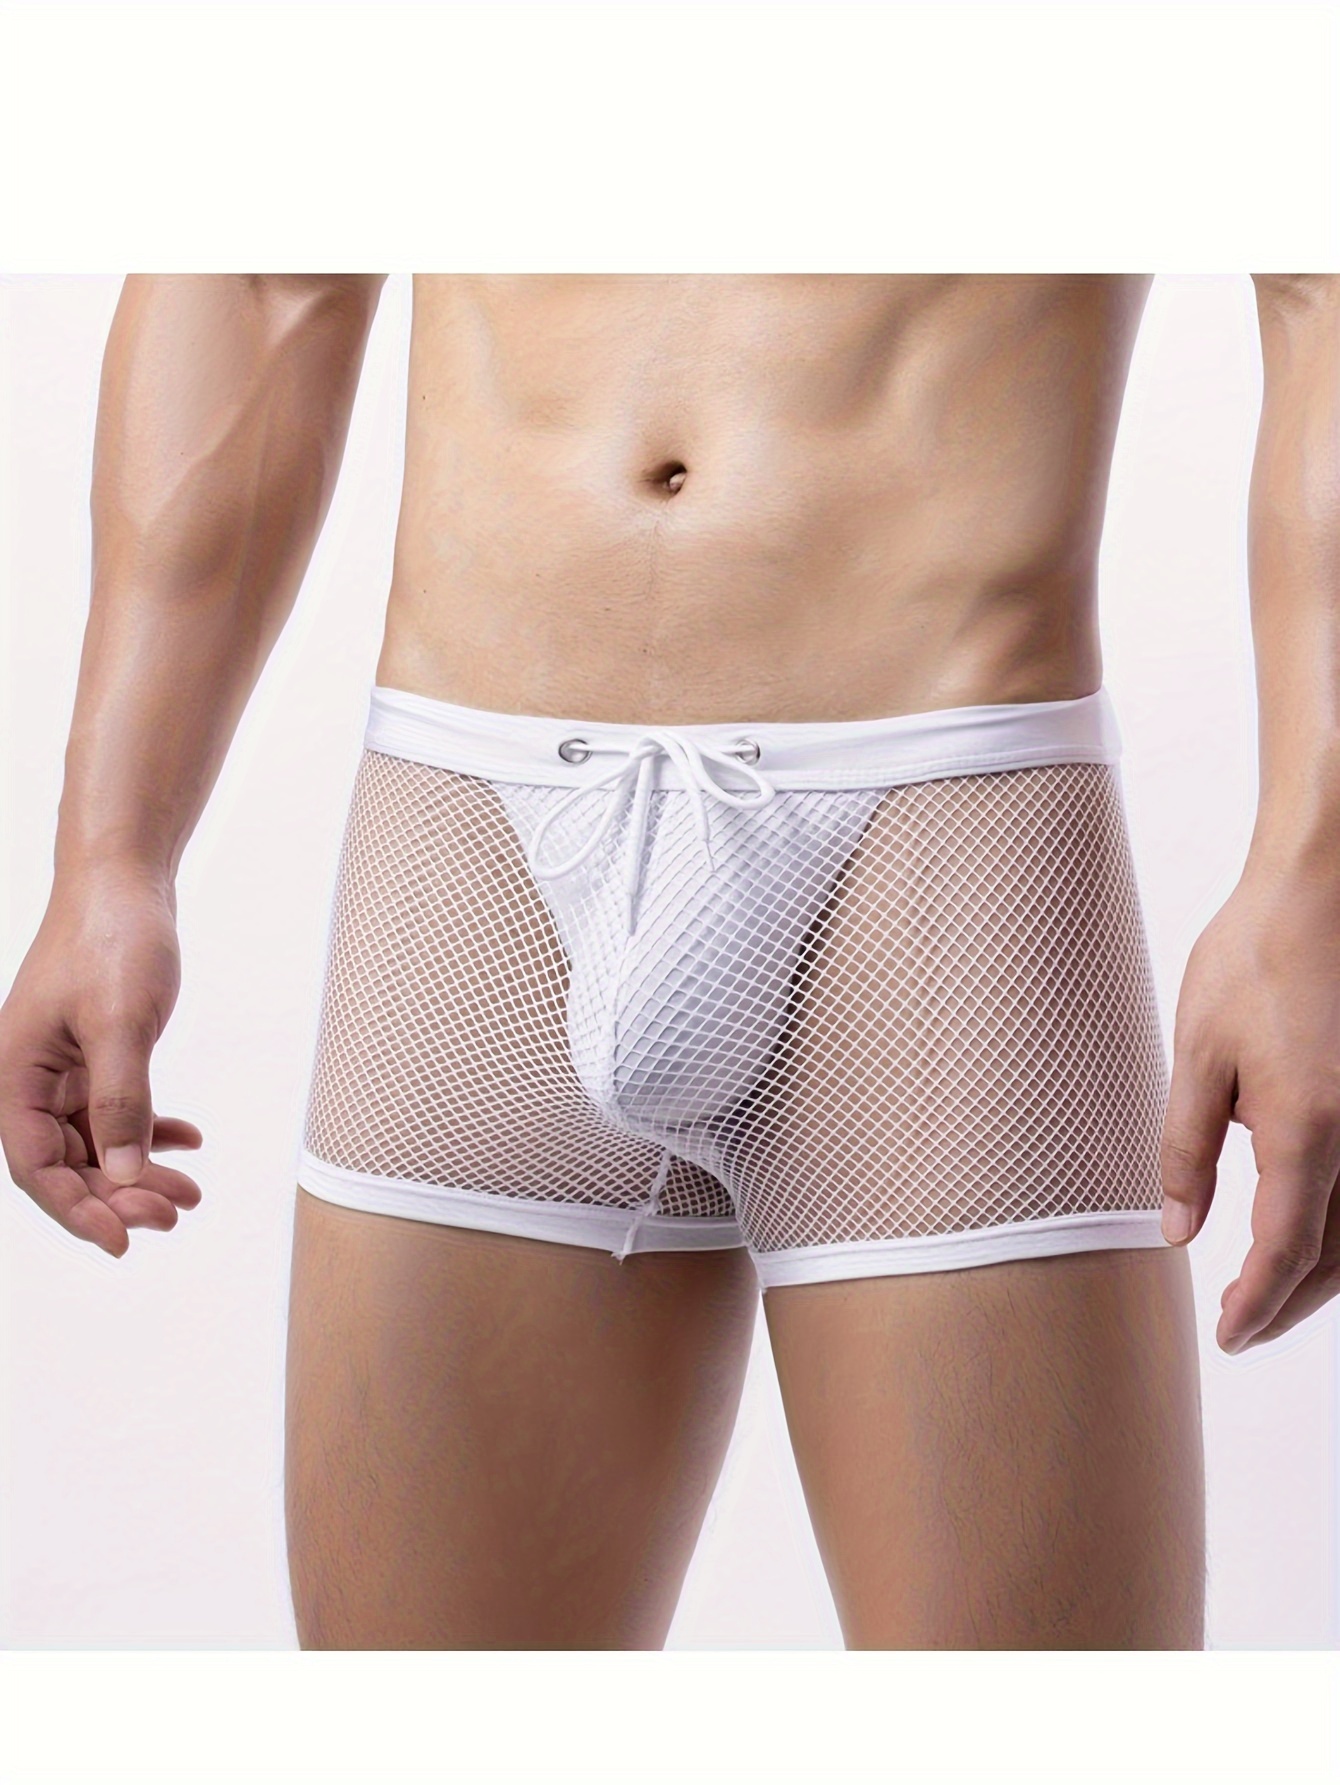 Men's See Through Mesh Underwear